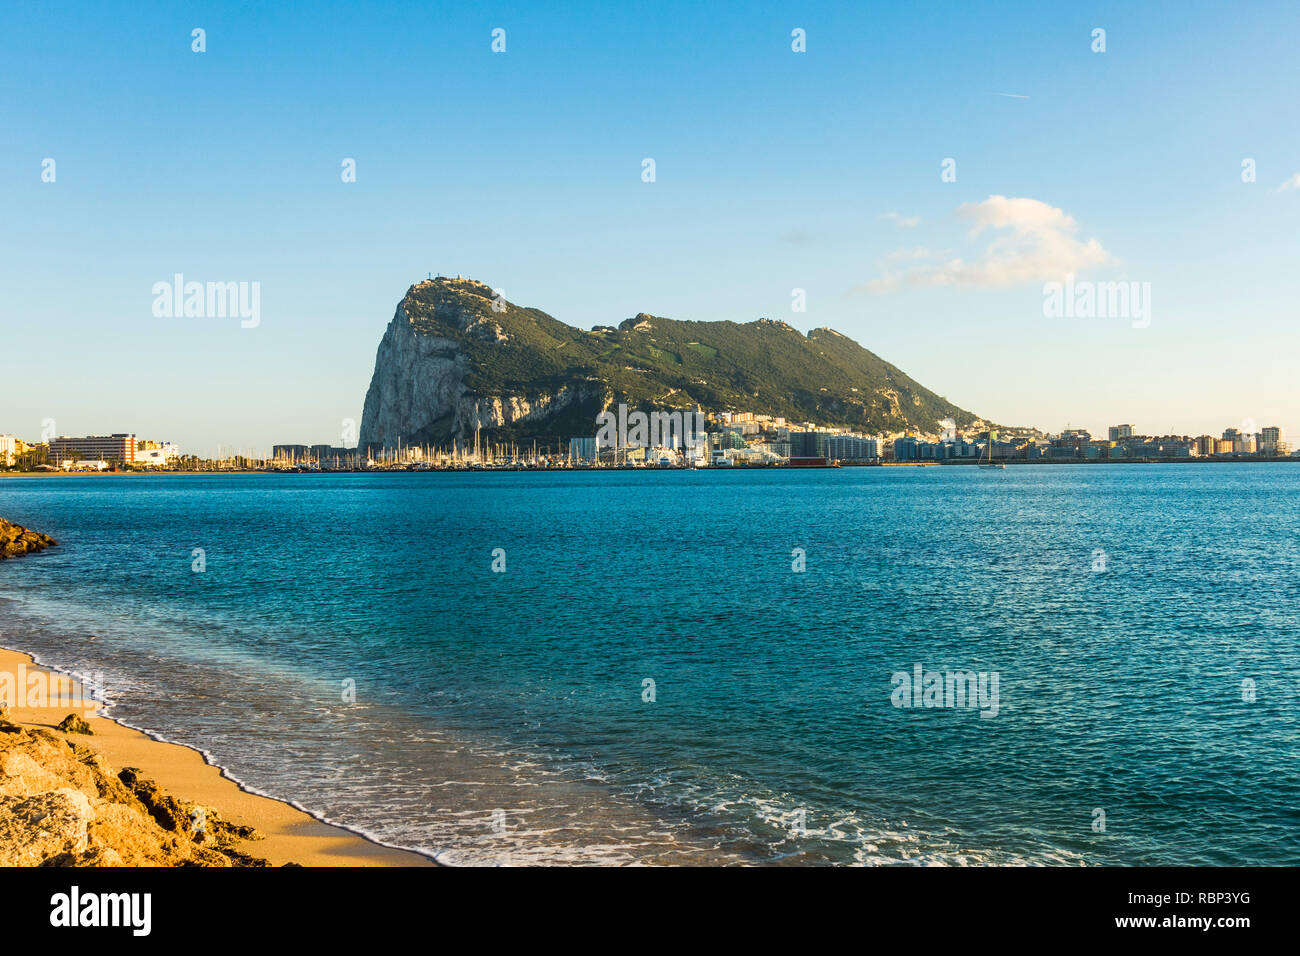 Gibilterra rock, Western faccia della rocca di Gibilterra dalla baia di Algeciras. Il rock britannico, Territorio di Oltremare, Gibilterra, Gib, UK. Foto Stock